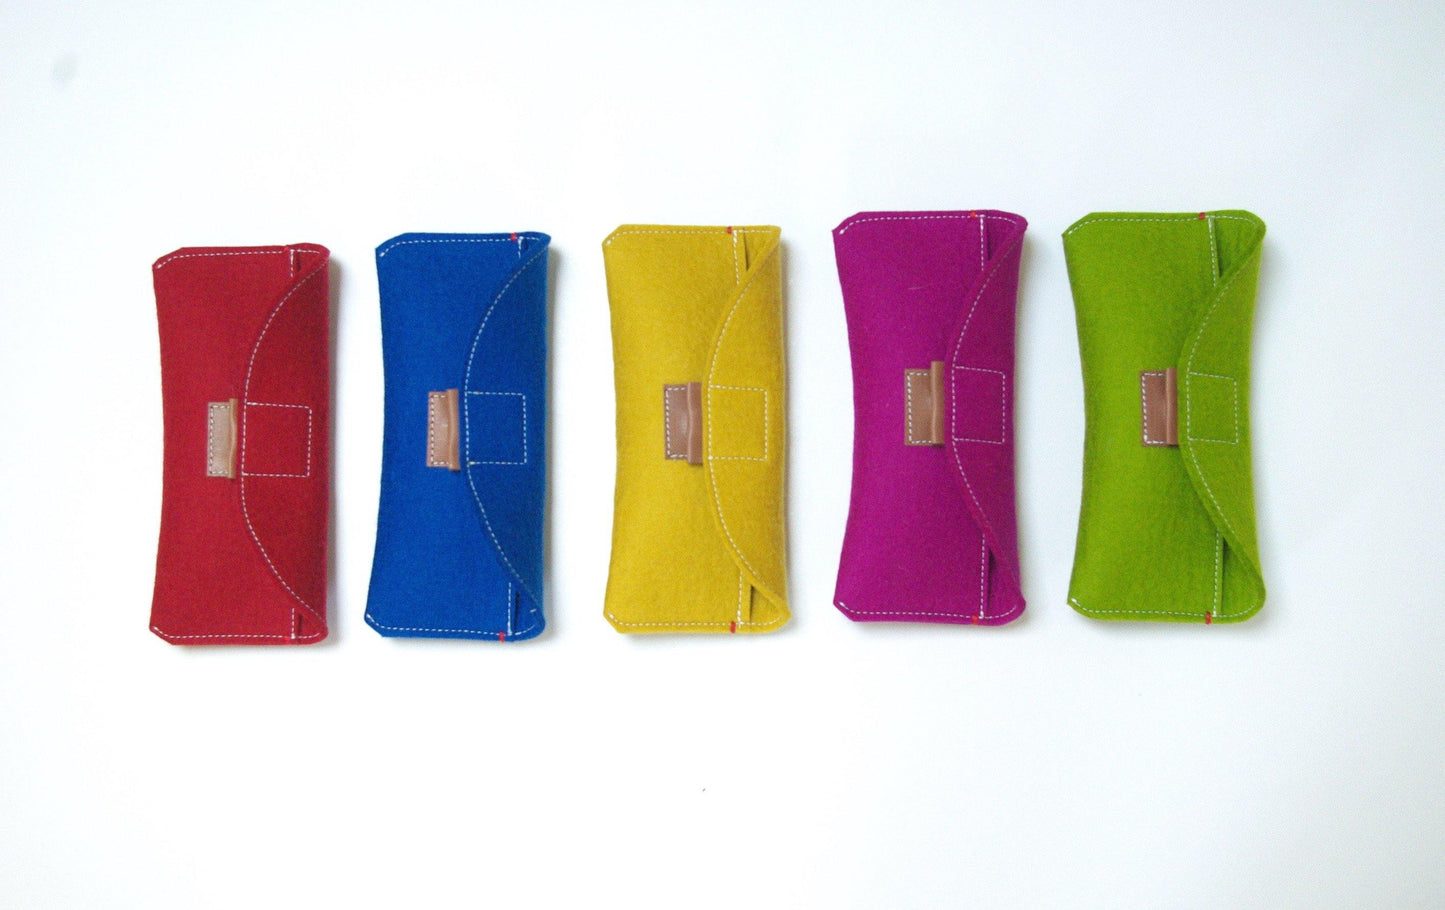  brillenkoker met magnetische sluiting  - alle kleuren - Westerman Bags vilten tassen en hoezen. Dutch Design.